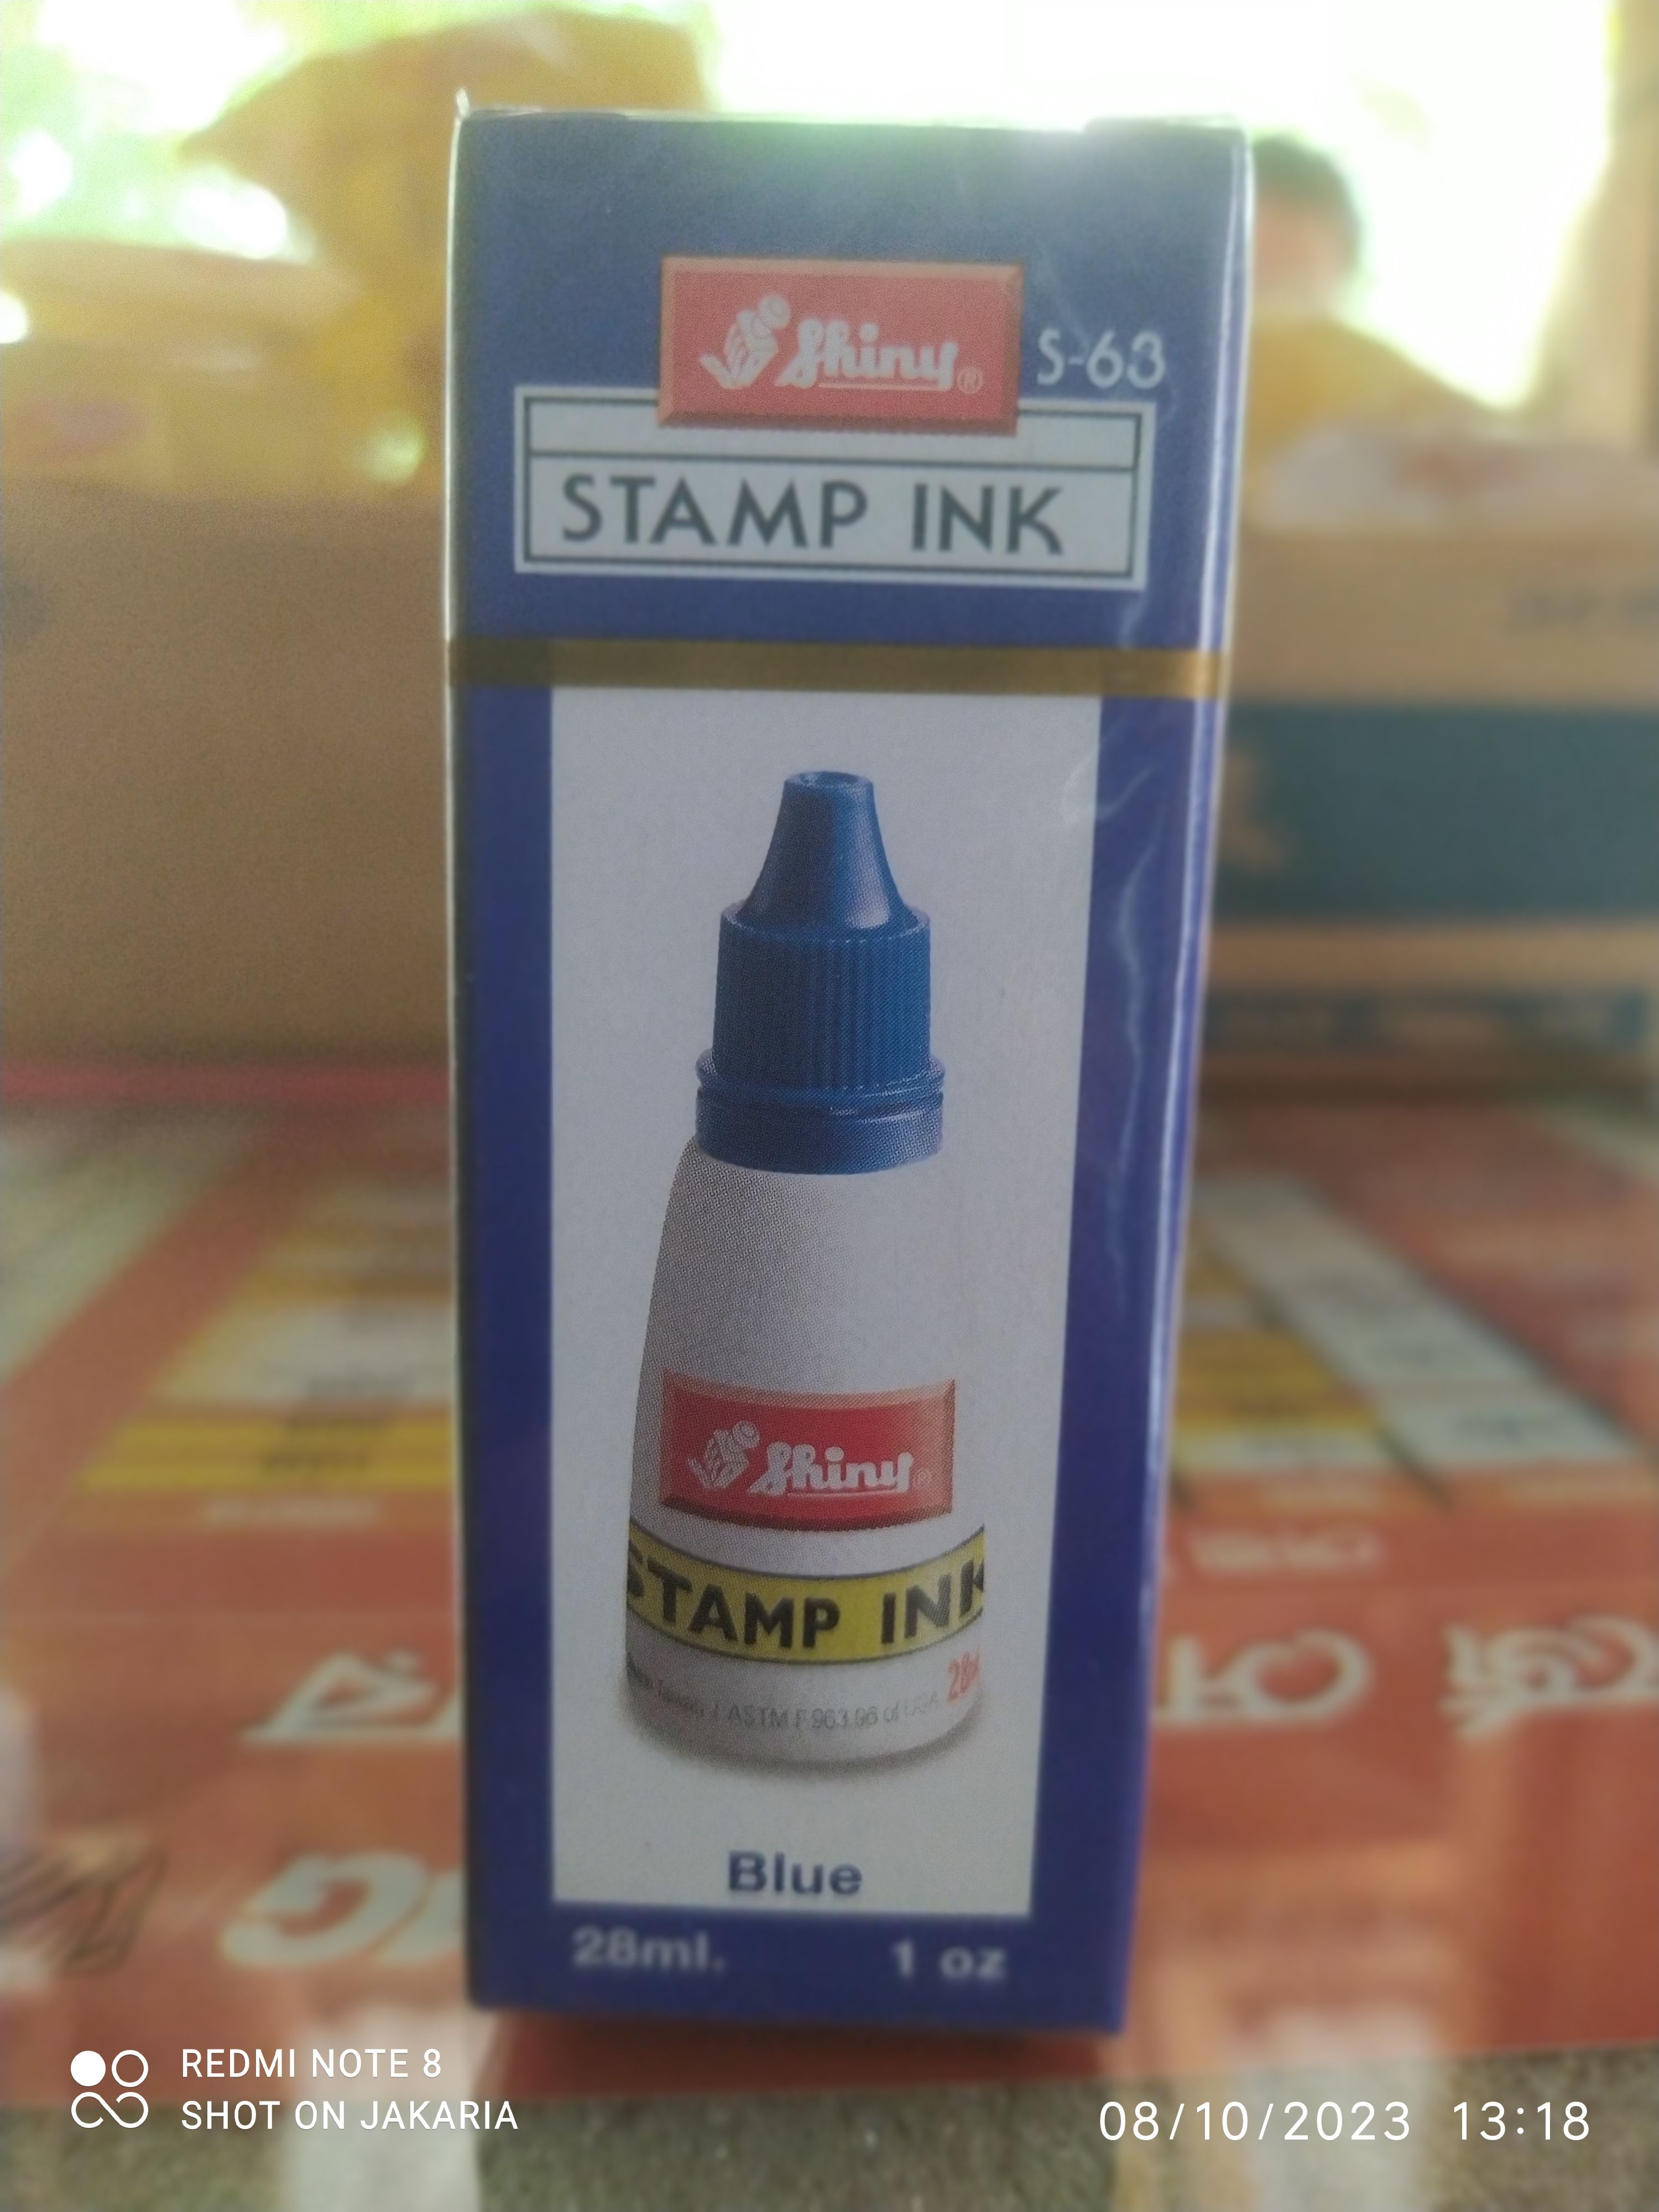 Shiny Stamp Original Blue Ink 28ml Price in Bangladesh